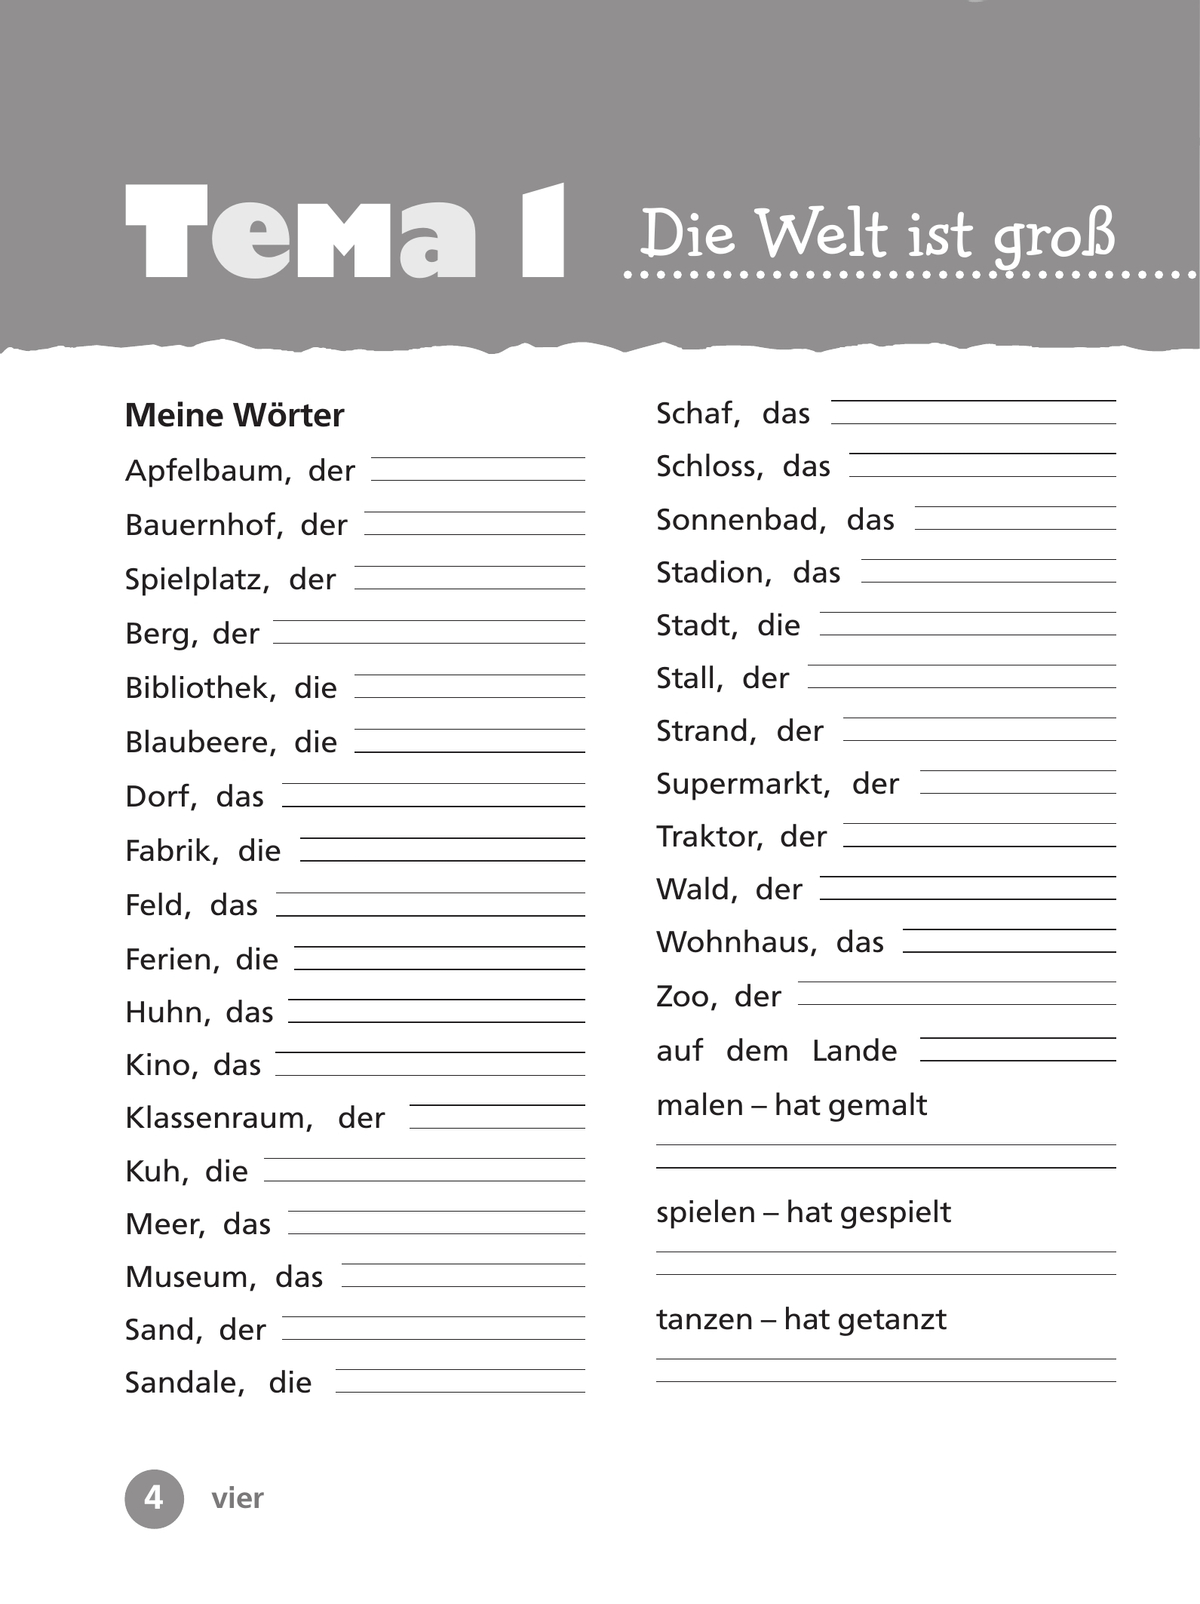 Немецкий язык. Рабочая тетрадь. 3 класс В 2-х ч. Ч. 1 5